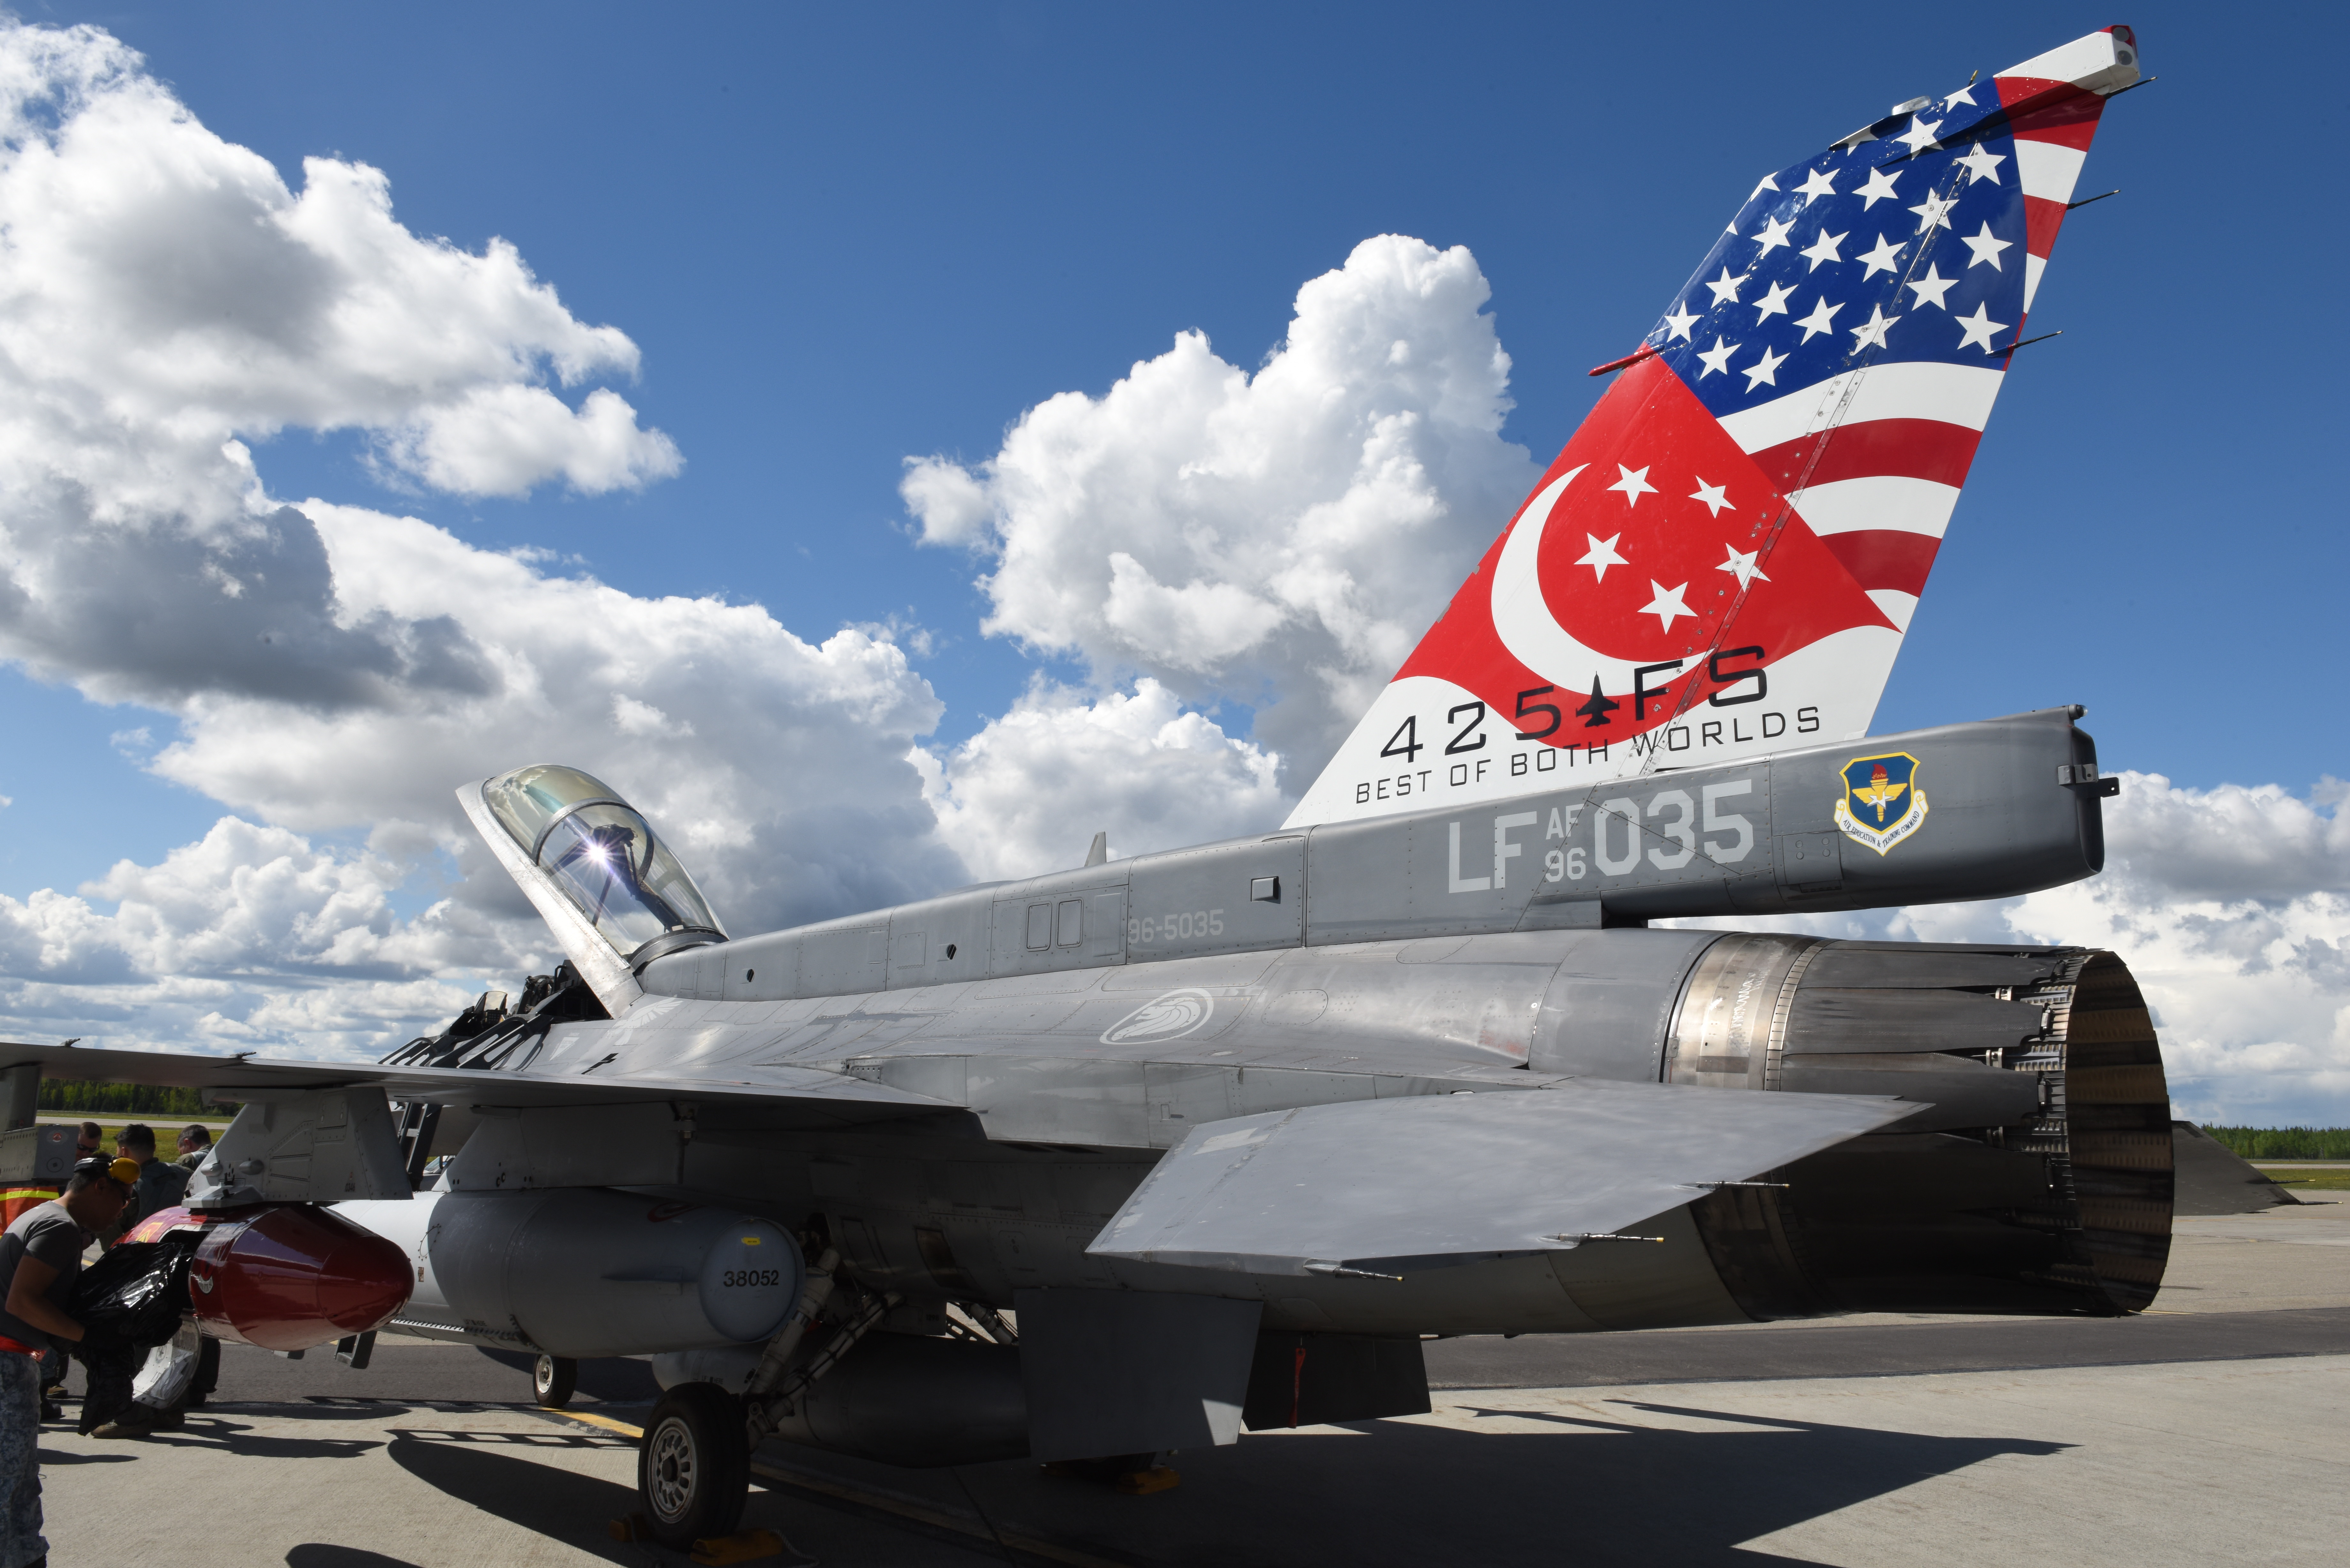 Интересный F-16 Fighting Falcon  425-й истребительной эскадрильи ВВС США с авиабазы Luke, шт. Аризона, прибывший на авиабазу Eielson, Аляска, для участия в учении  RED FLAG-Alaska 18-2, фото сделано 1 июня 2018 года